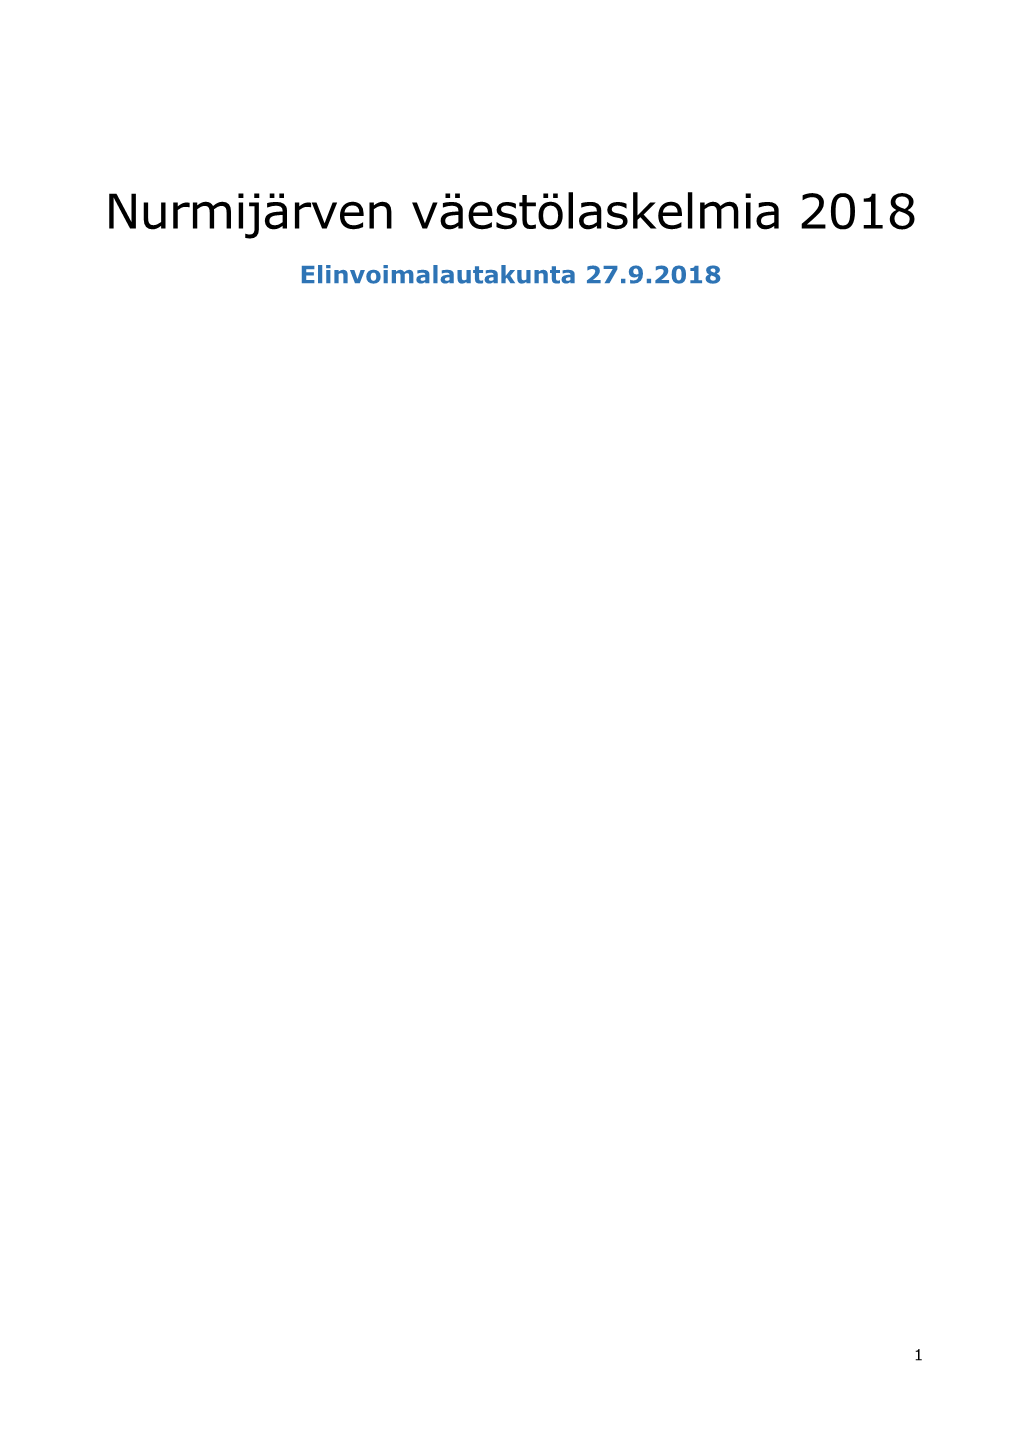 Nurmijärven Väestölaskelmia 2018